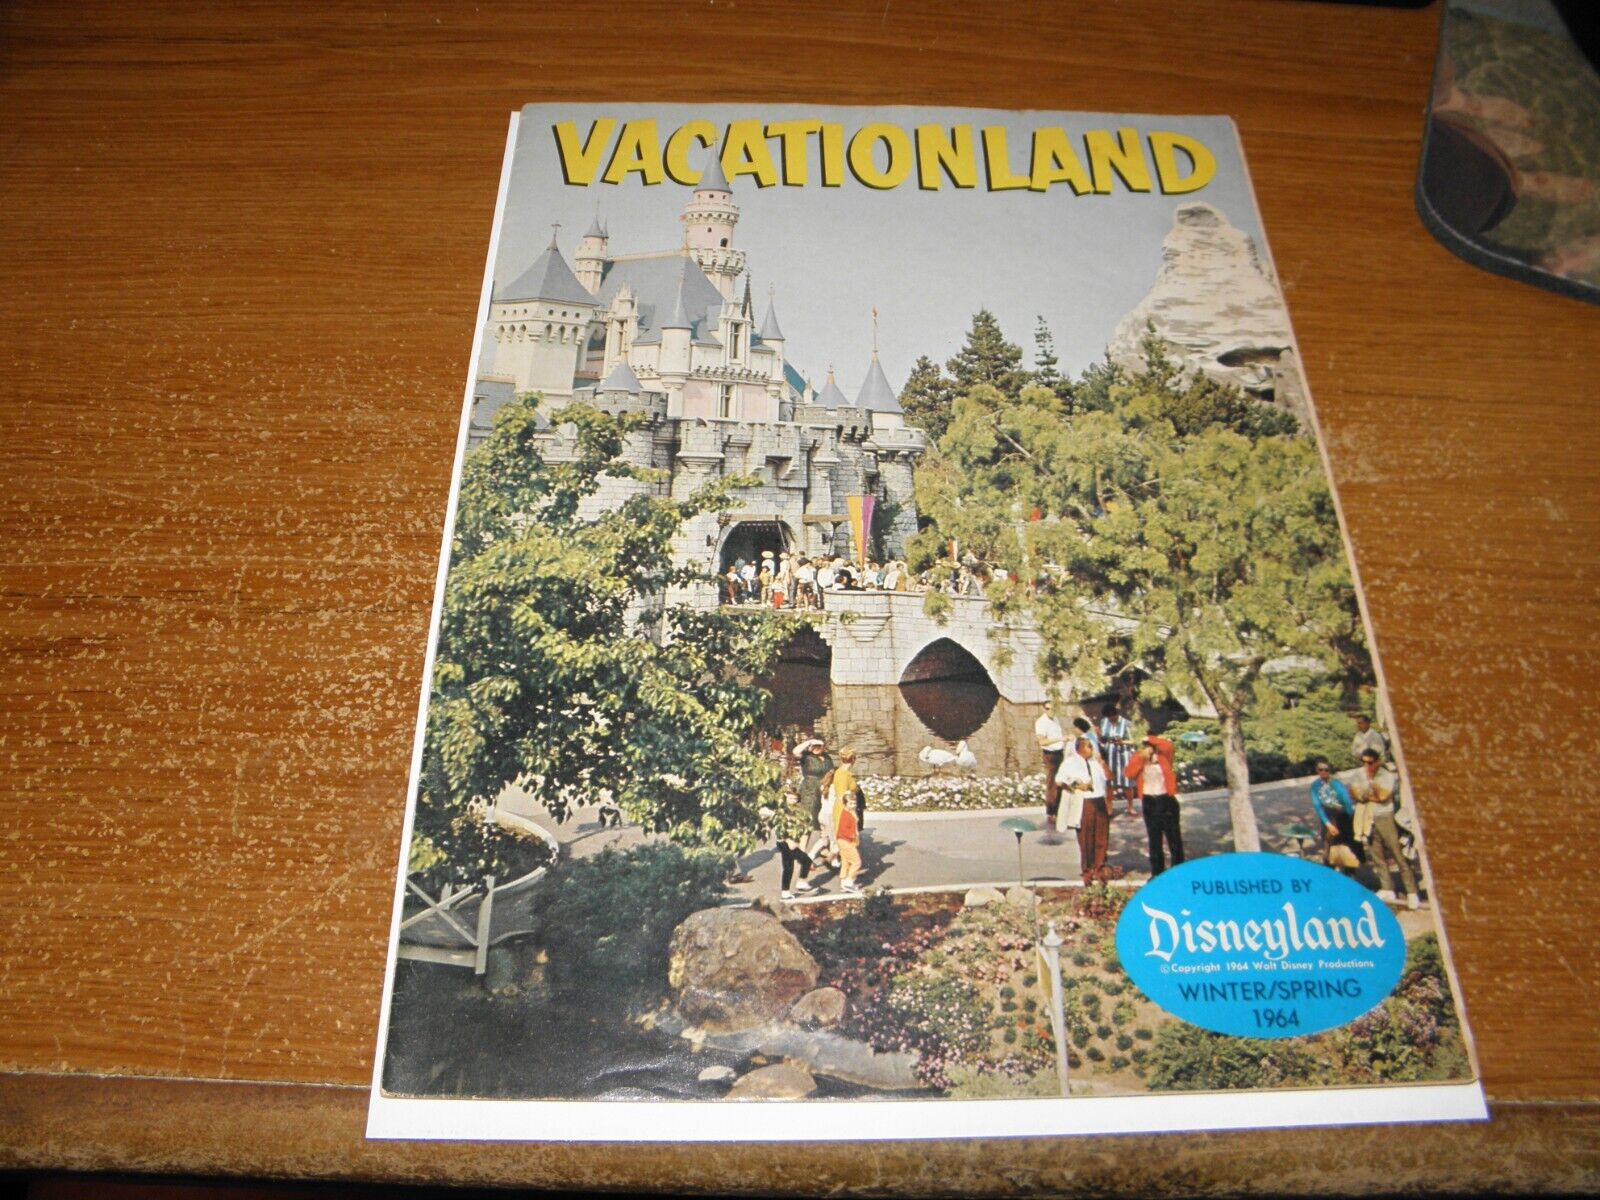 Disneyland Vacationland v8#1 Win/Spr 1964 Castle in Spring Park Photos & Info